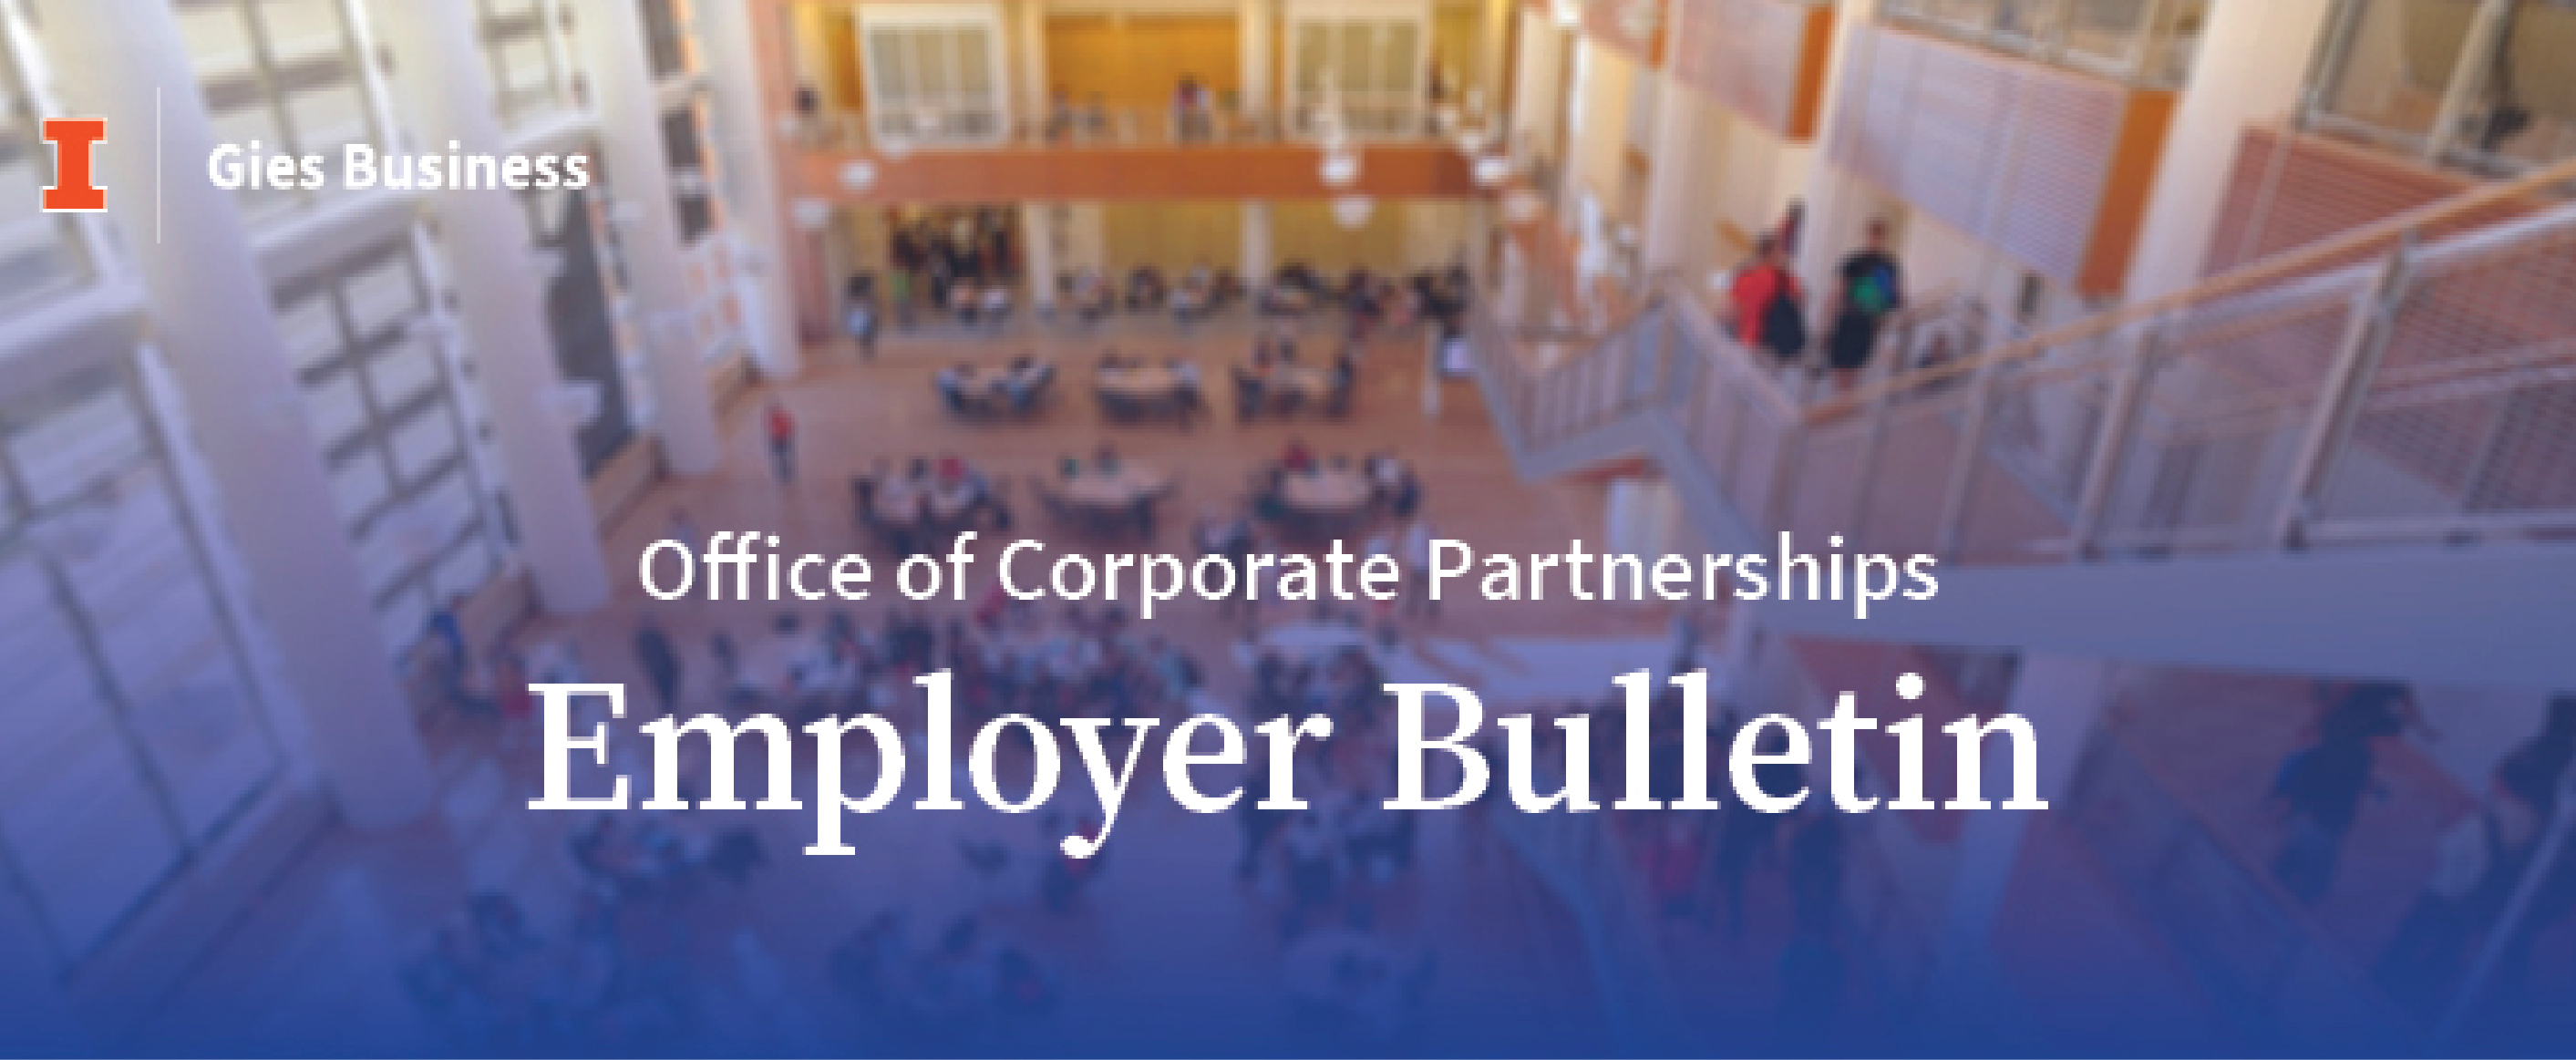 Employer Bulletin